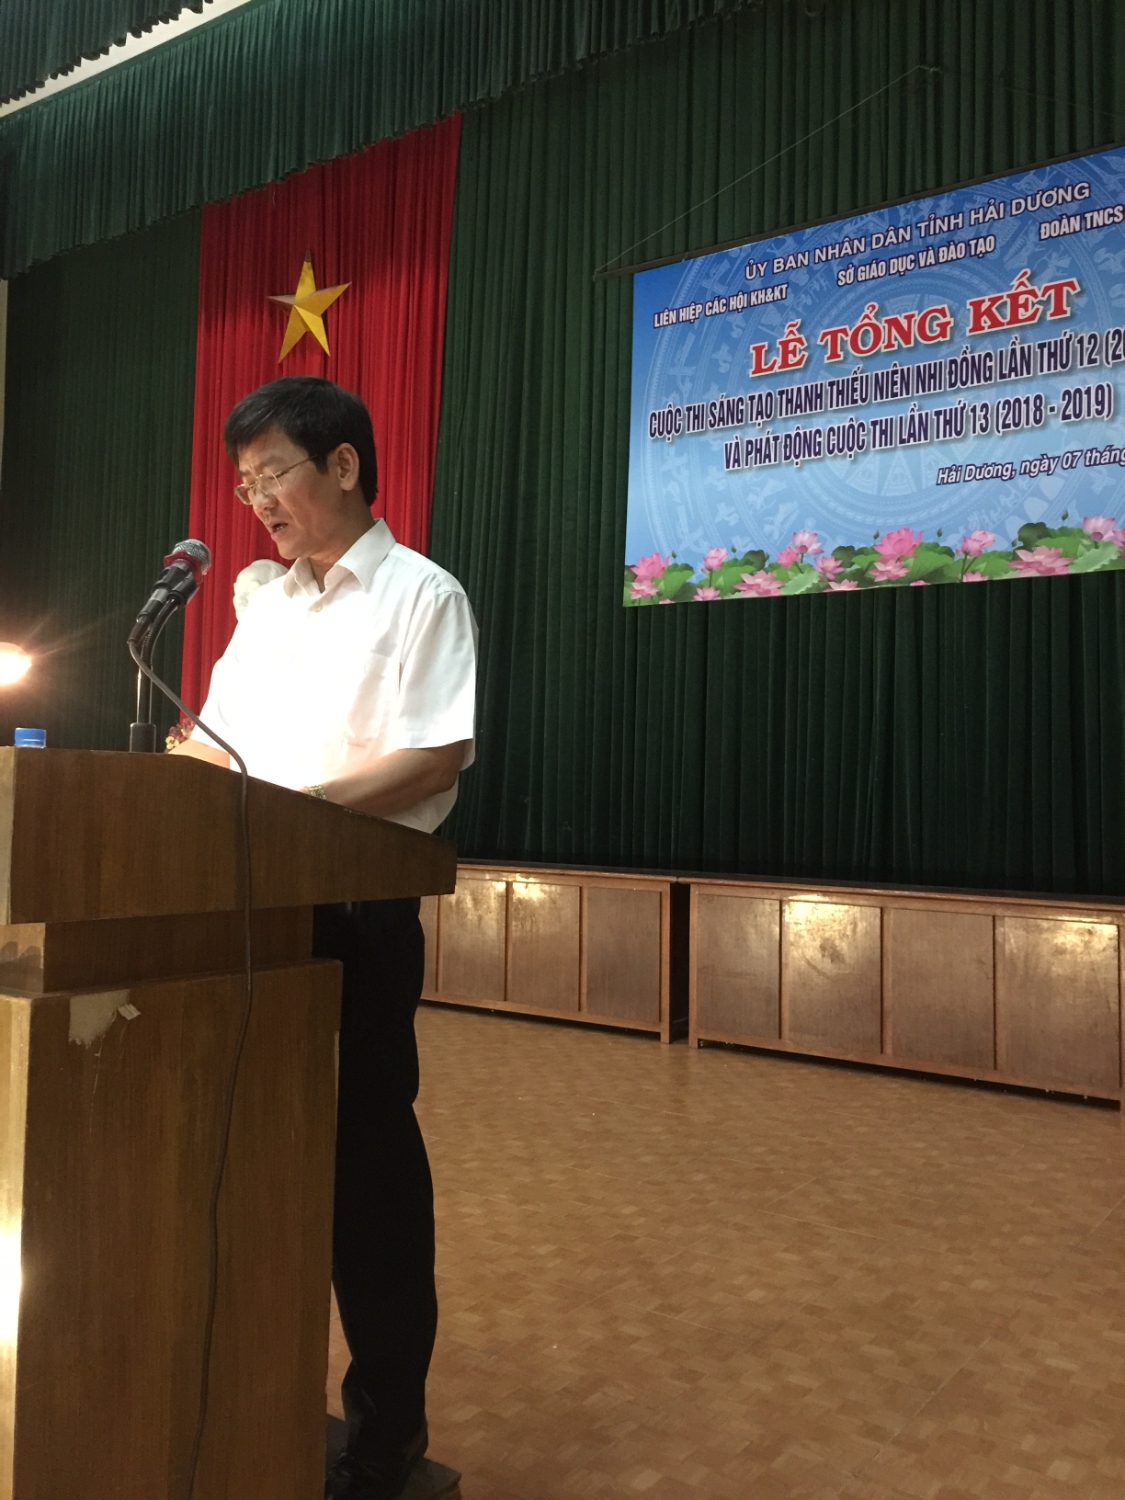 Đồng chí Lương Văn Cầu Phó Chủ tịch UBND tỉnh Hải Dương phát động Cuộc thi lần thứ 13 (2018 2019)